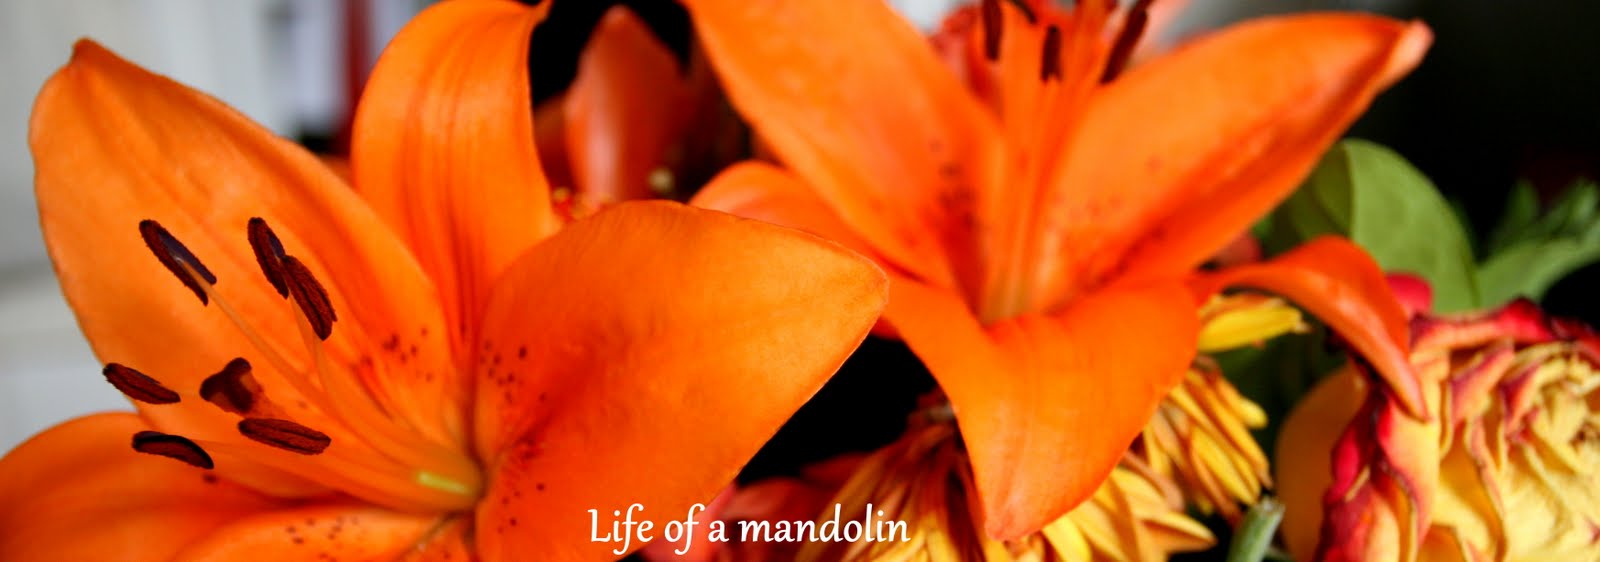 Life of a mandolin